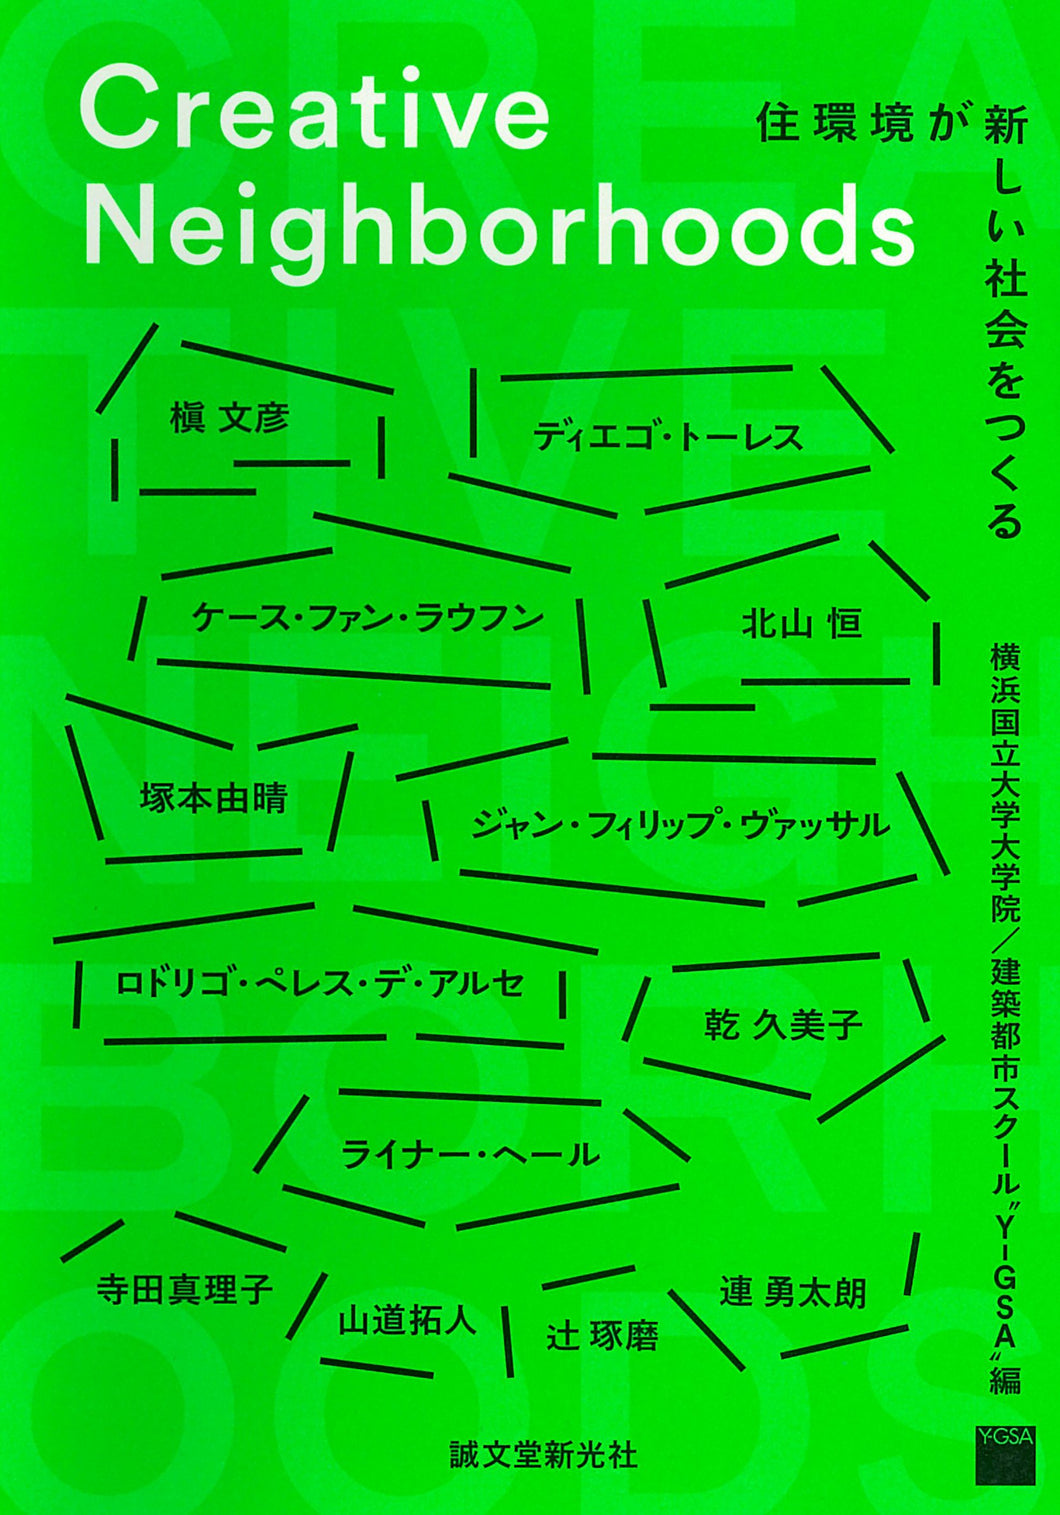 【Creative Neighborhoods】クリエイティブネイバーフッズ